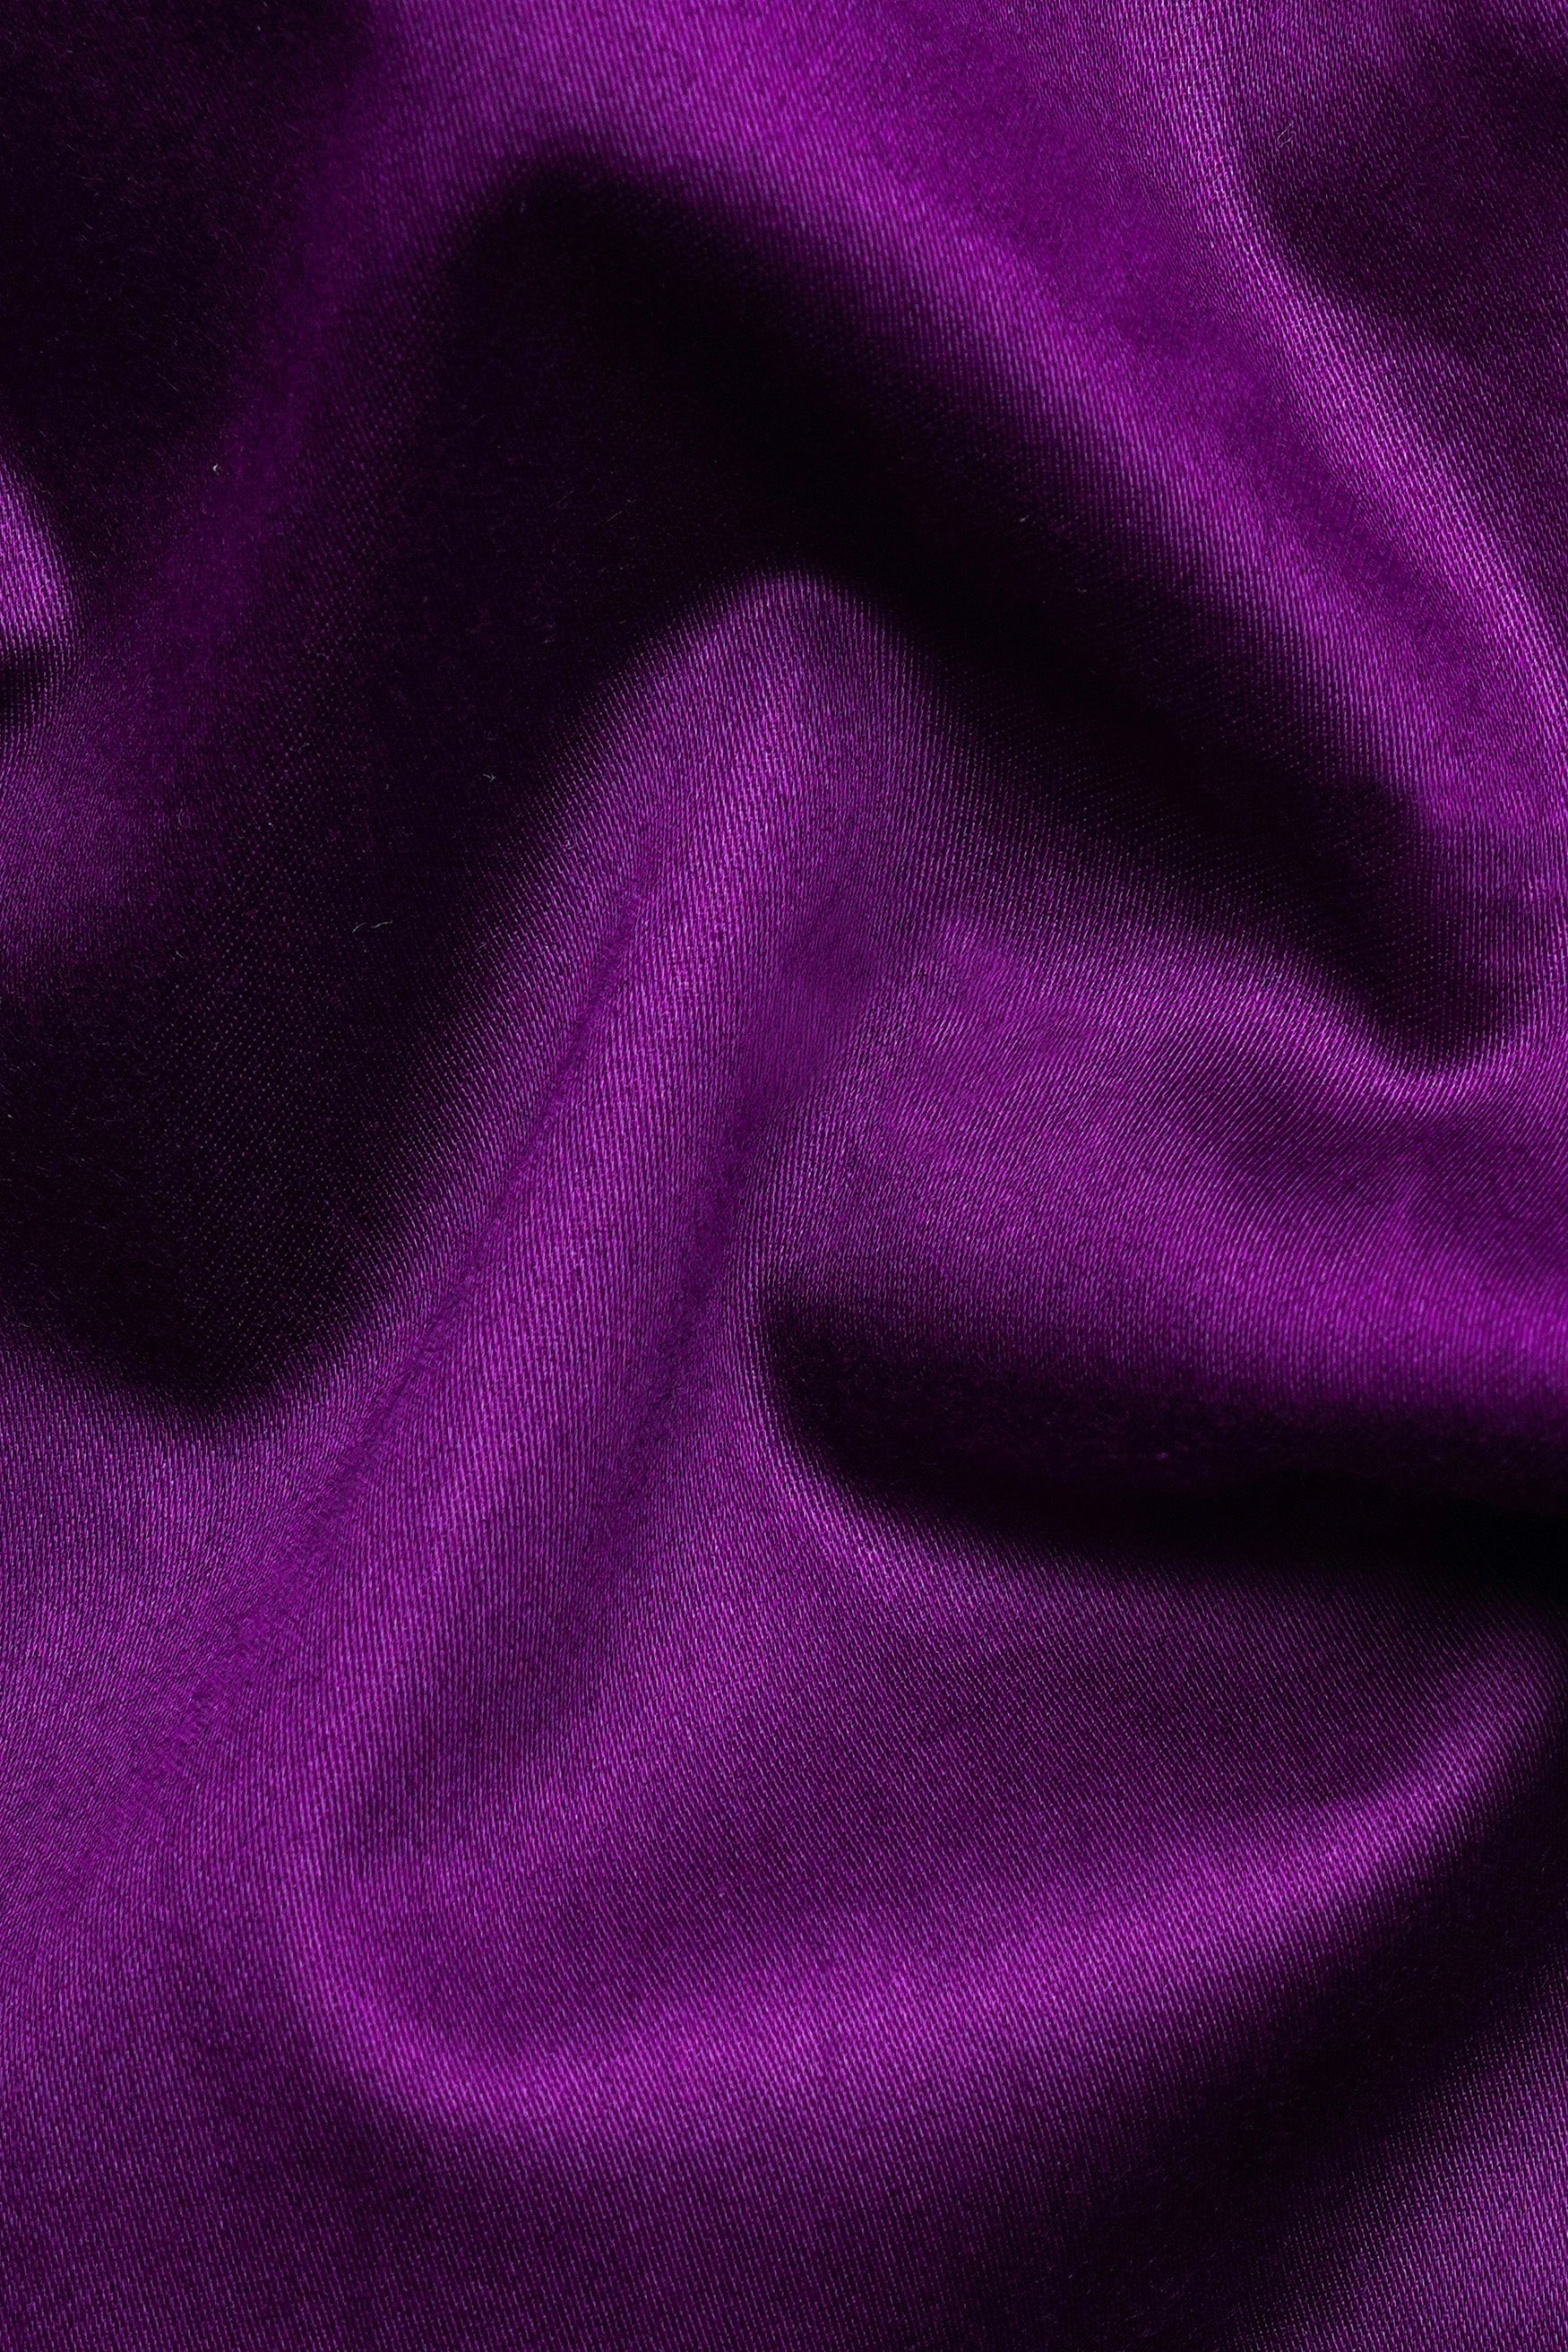 Palatinate Purple Subtle Sheen Super Soft Premium Cotton Shirt 11741-38, 11741-H-38, 11741-39, 11741-H-39, 11741-40, 11741-H-40, 11741-42, 11741-H-42, 11741-44, 11741-H-44, 11741-46, 11741-H-46, 11741-48, 11741-H-48, 11741-50, 11741-H-50, 11741-52, 11741-H-52